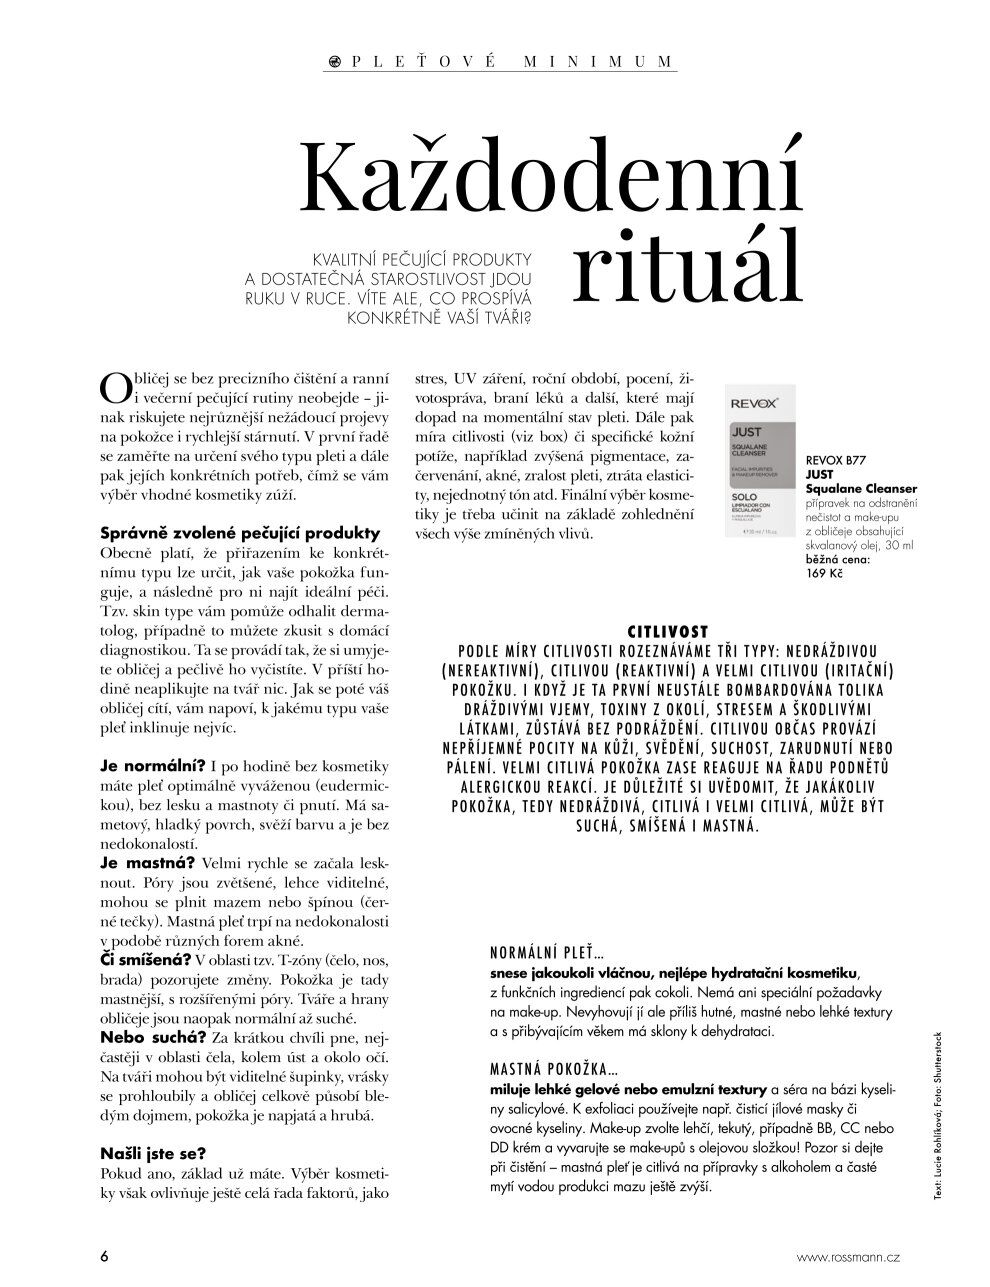 ROSSMANN magazín - Péče o pleť ROSSMANN drogerie strana 8